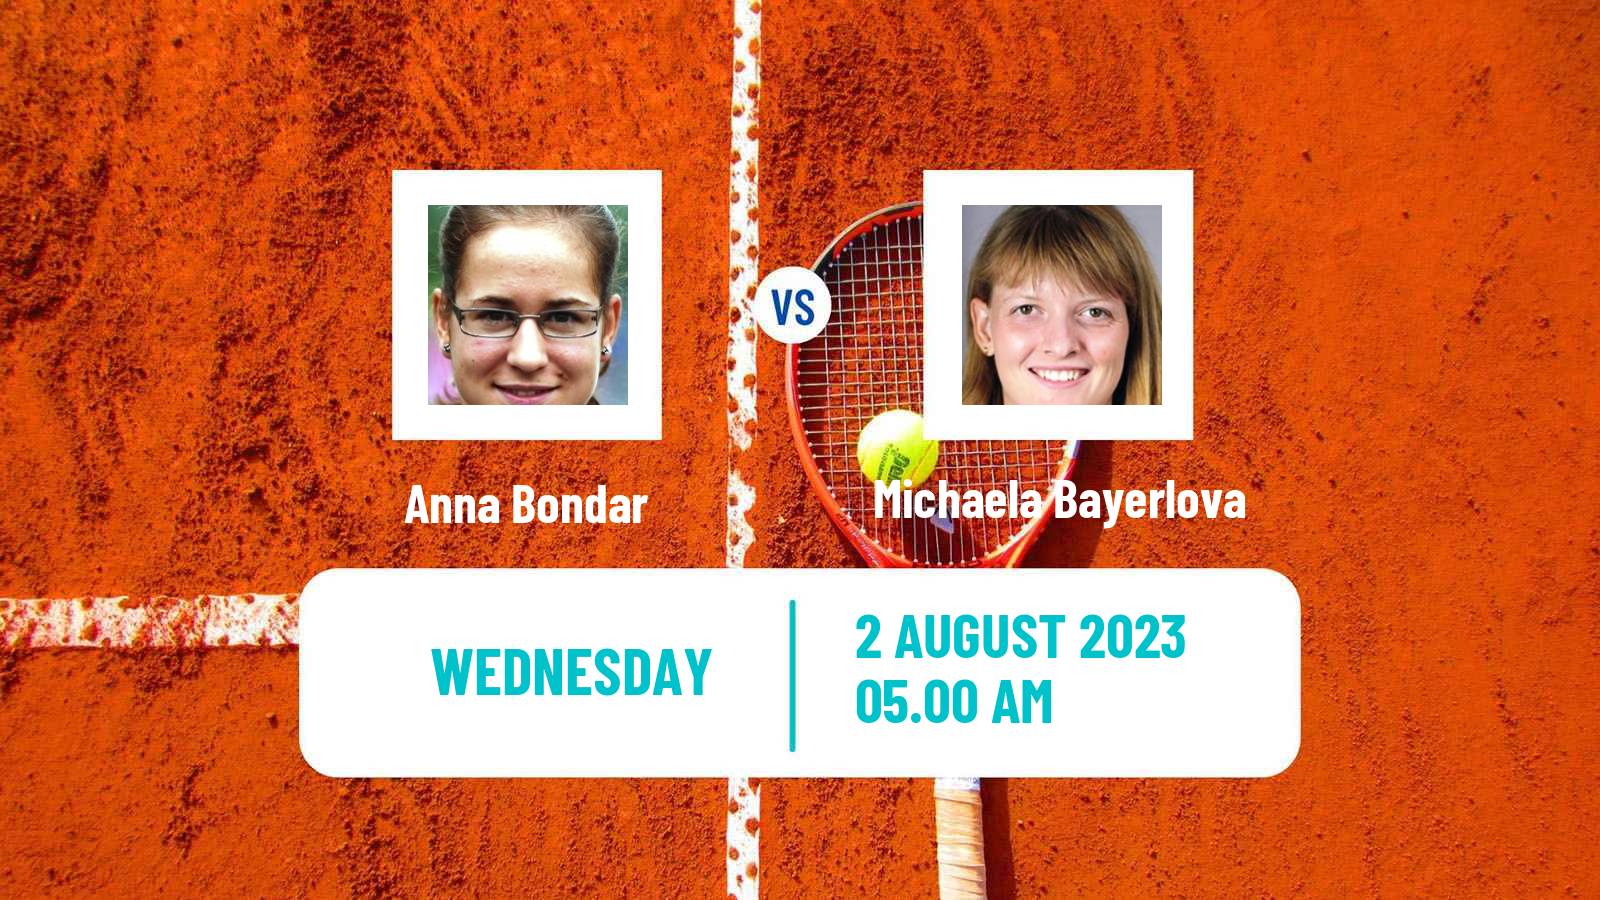 Tennis ITF W60 Hechingen Women Anna Bondar - Michaela Bayerlova